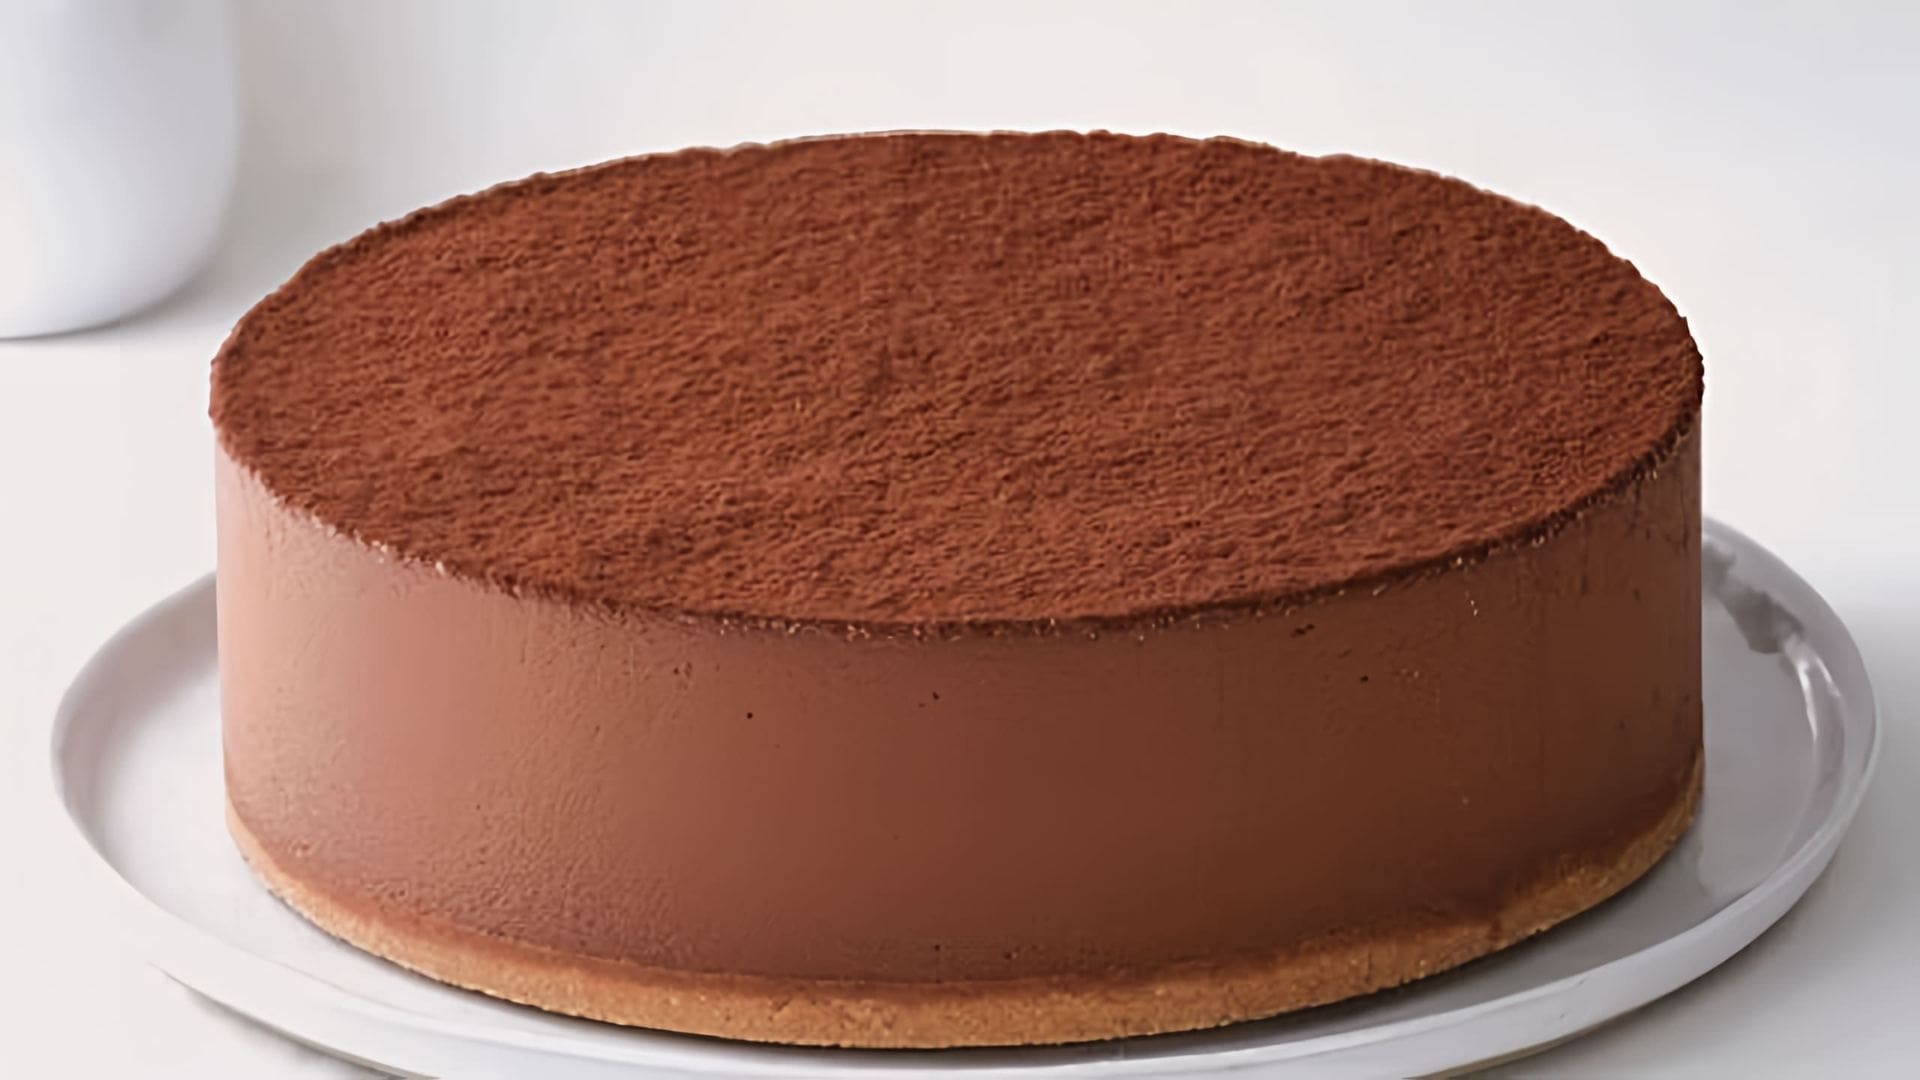 Торт "Трюфель" - это вкусный и ароматный десерт, который можно приготовить в домашних условиях